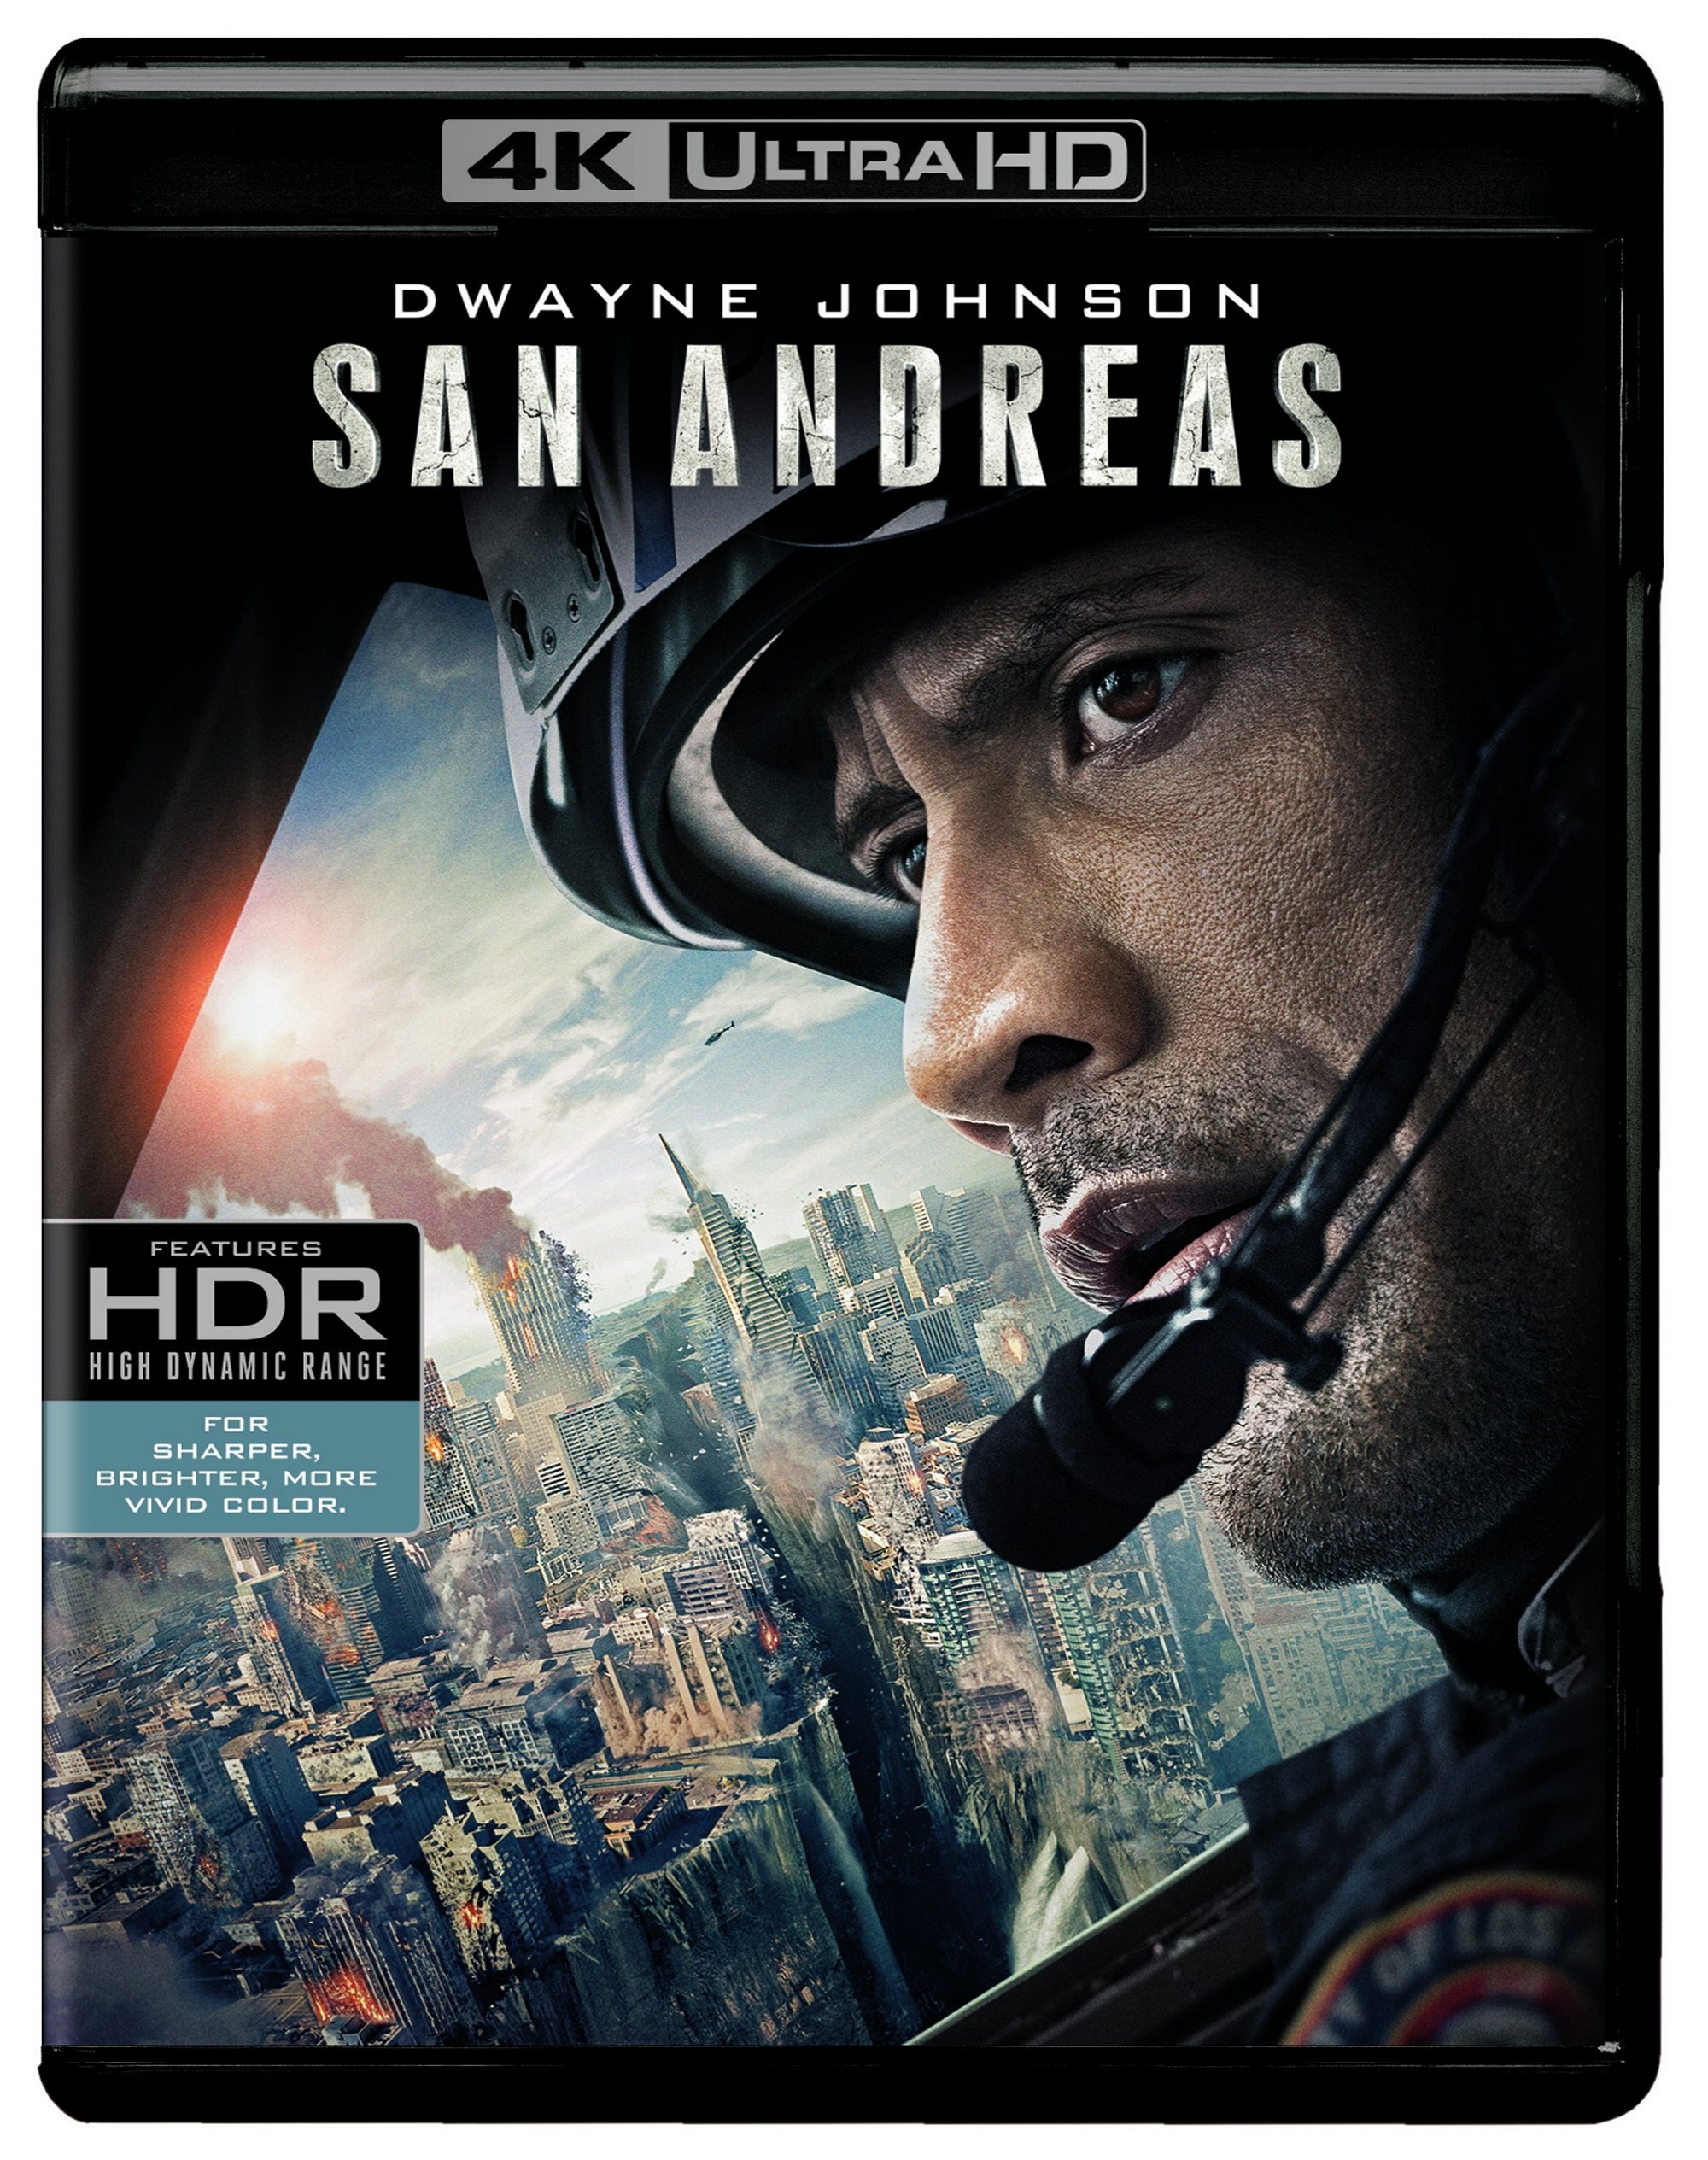 San Andreas (4K Ultra HD + Blu-ray) - UHD [ 2015 ]  - Action Movies On 4K Ultra HD Blu-ray - Movies On GRUV